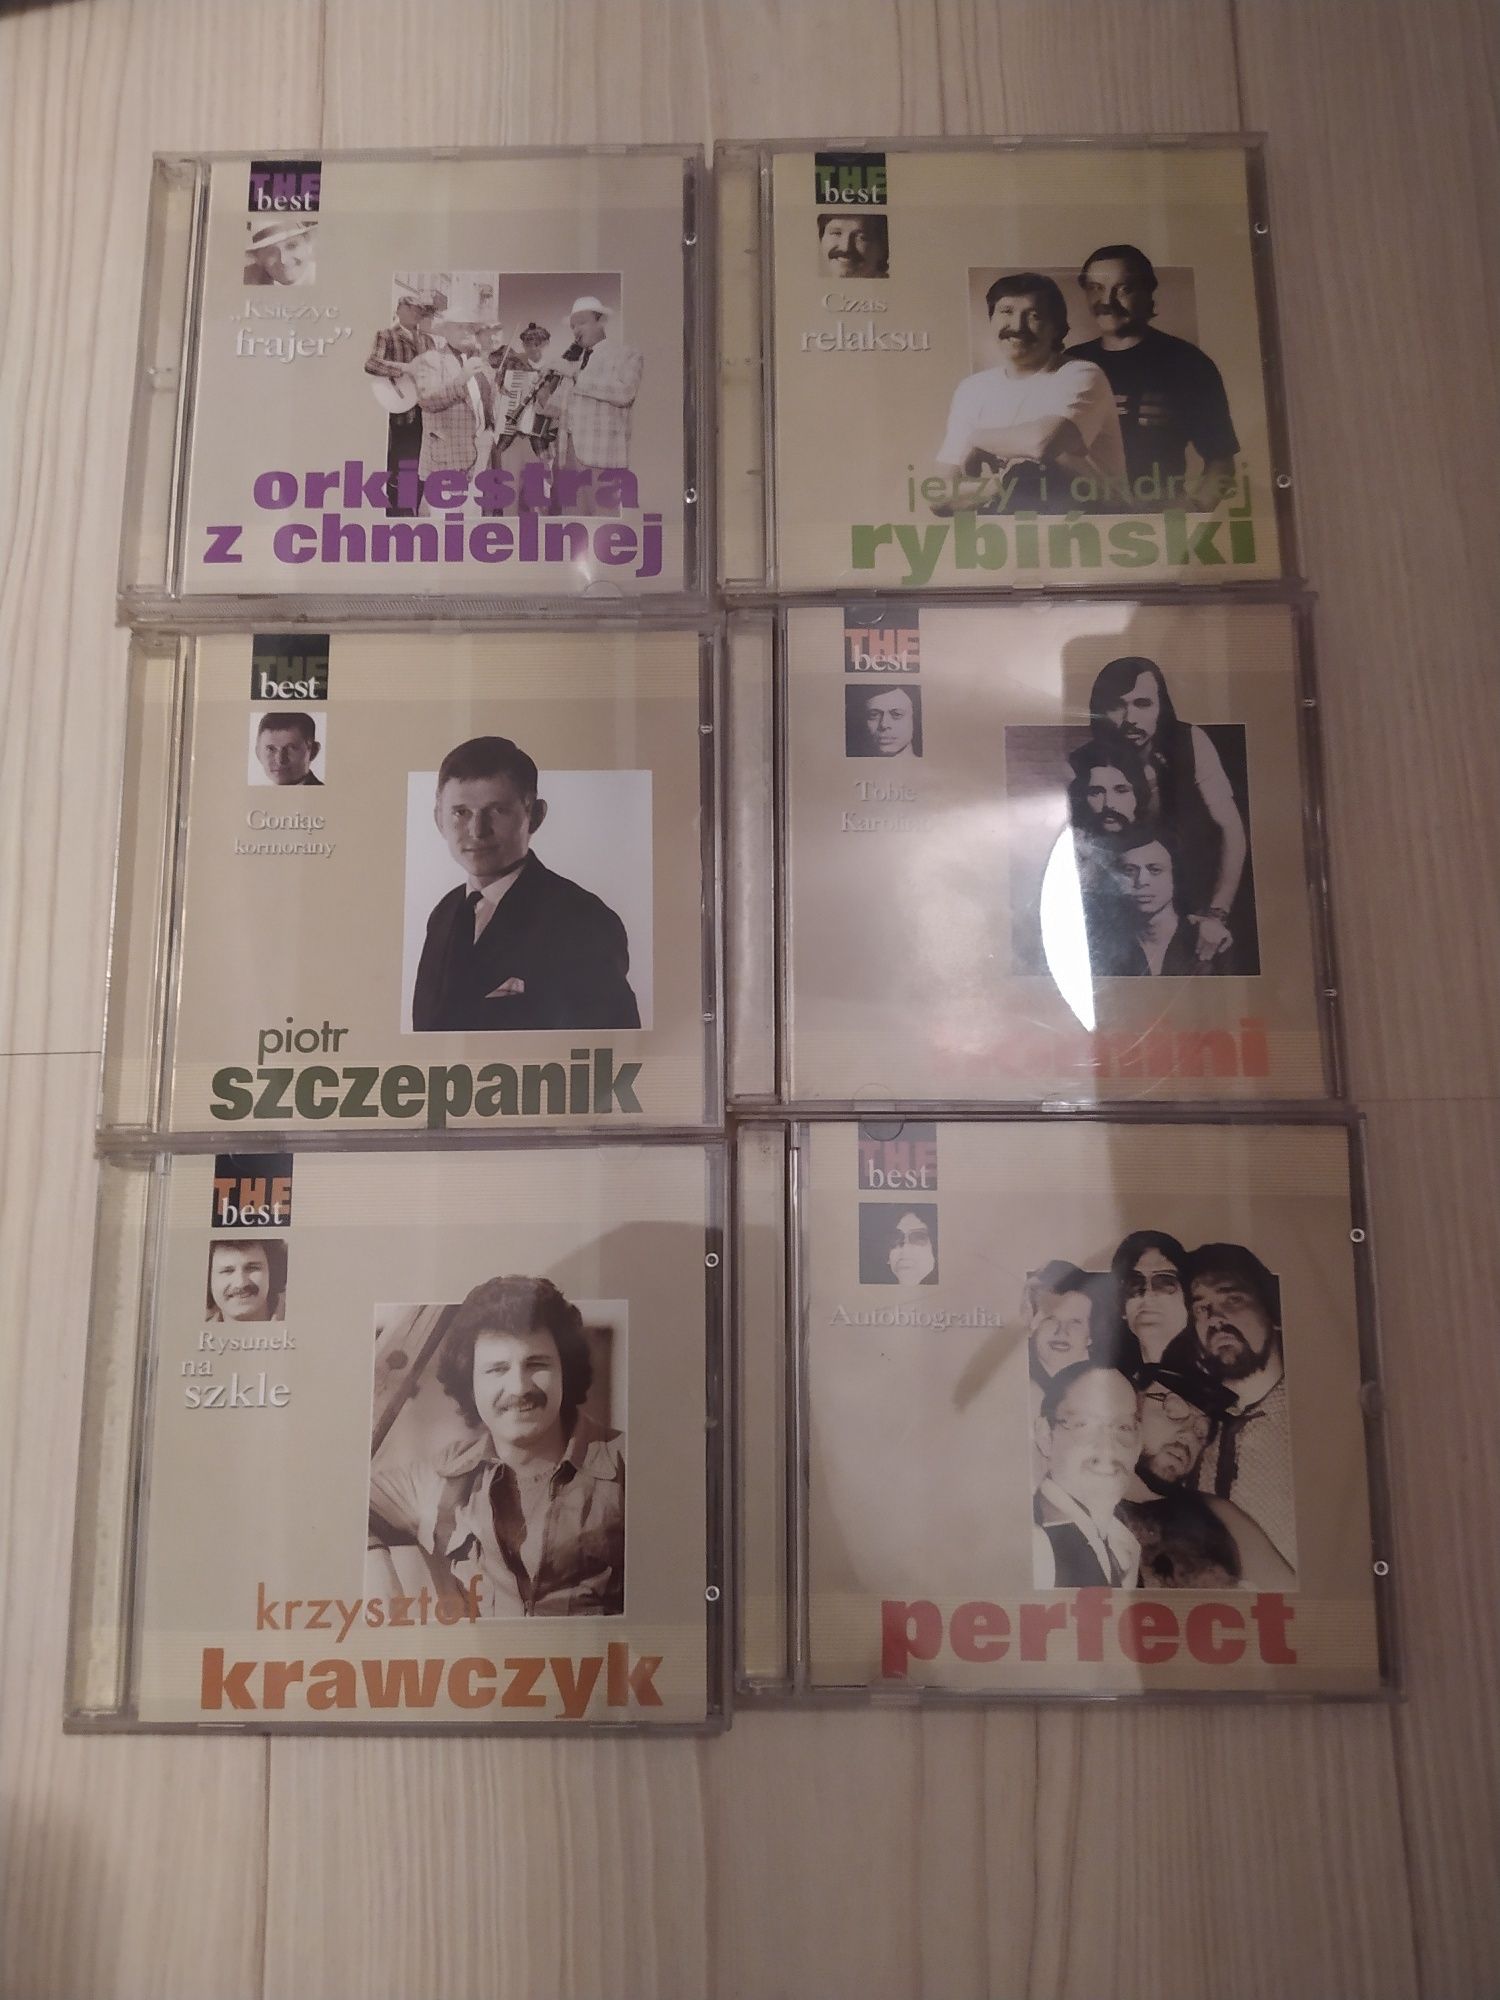 The Best Of Krawczyk/Perfect/Homoni/Szczepanik/Rybiński/Orkiestra/Kome